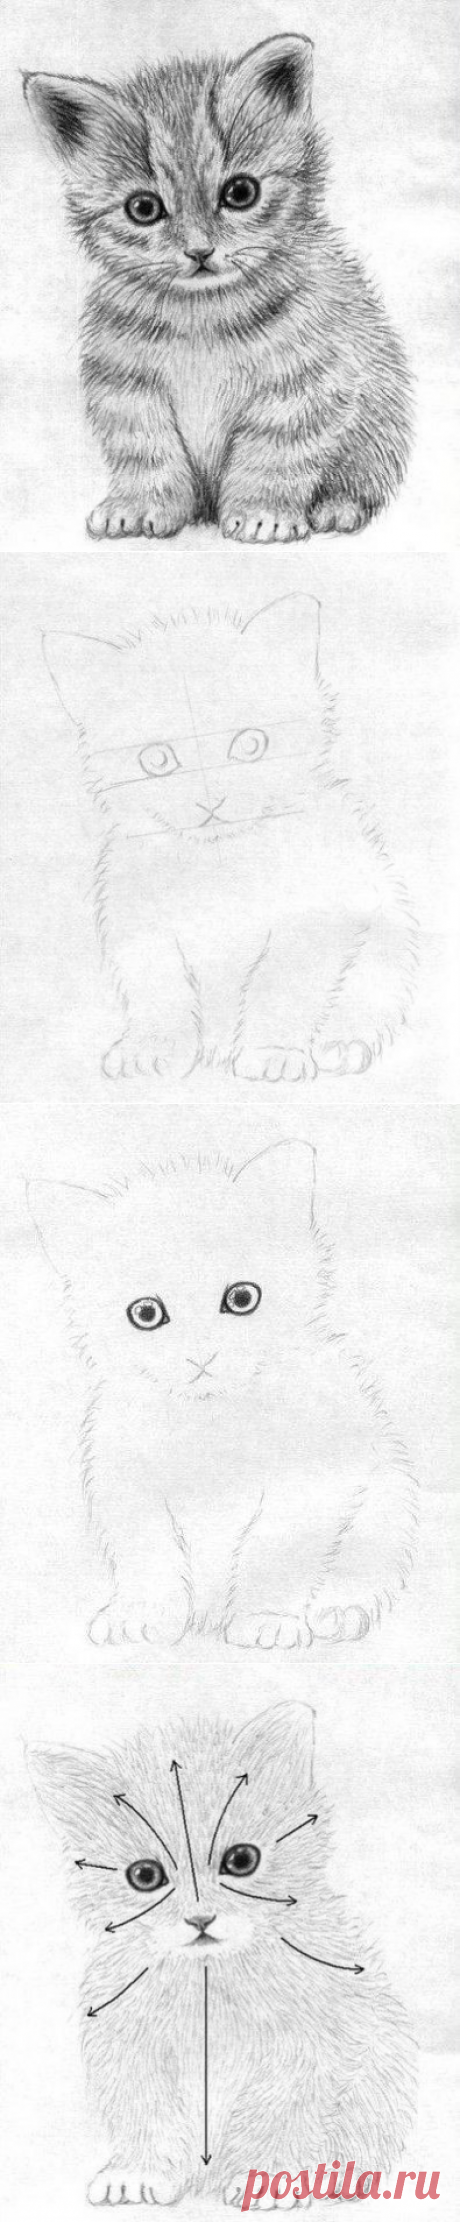 Рисуем маленького котёнка